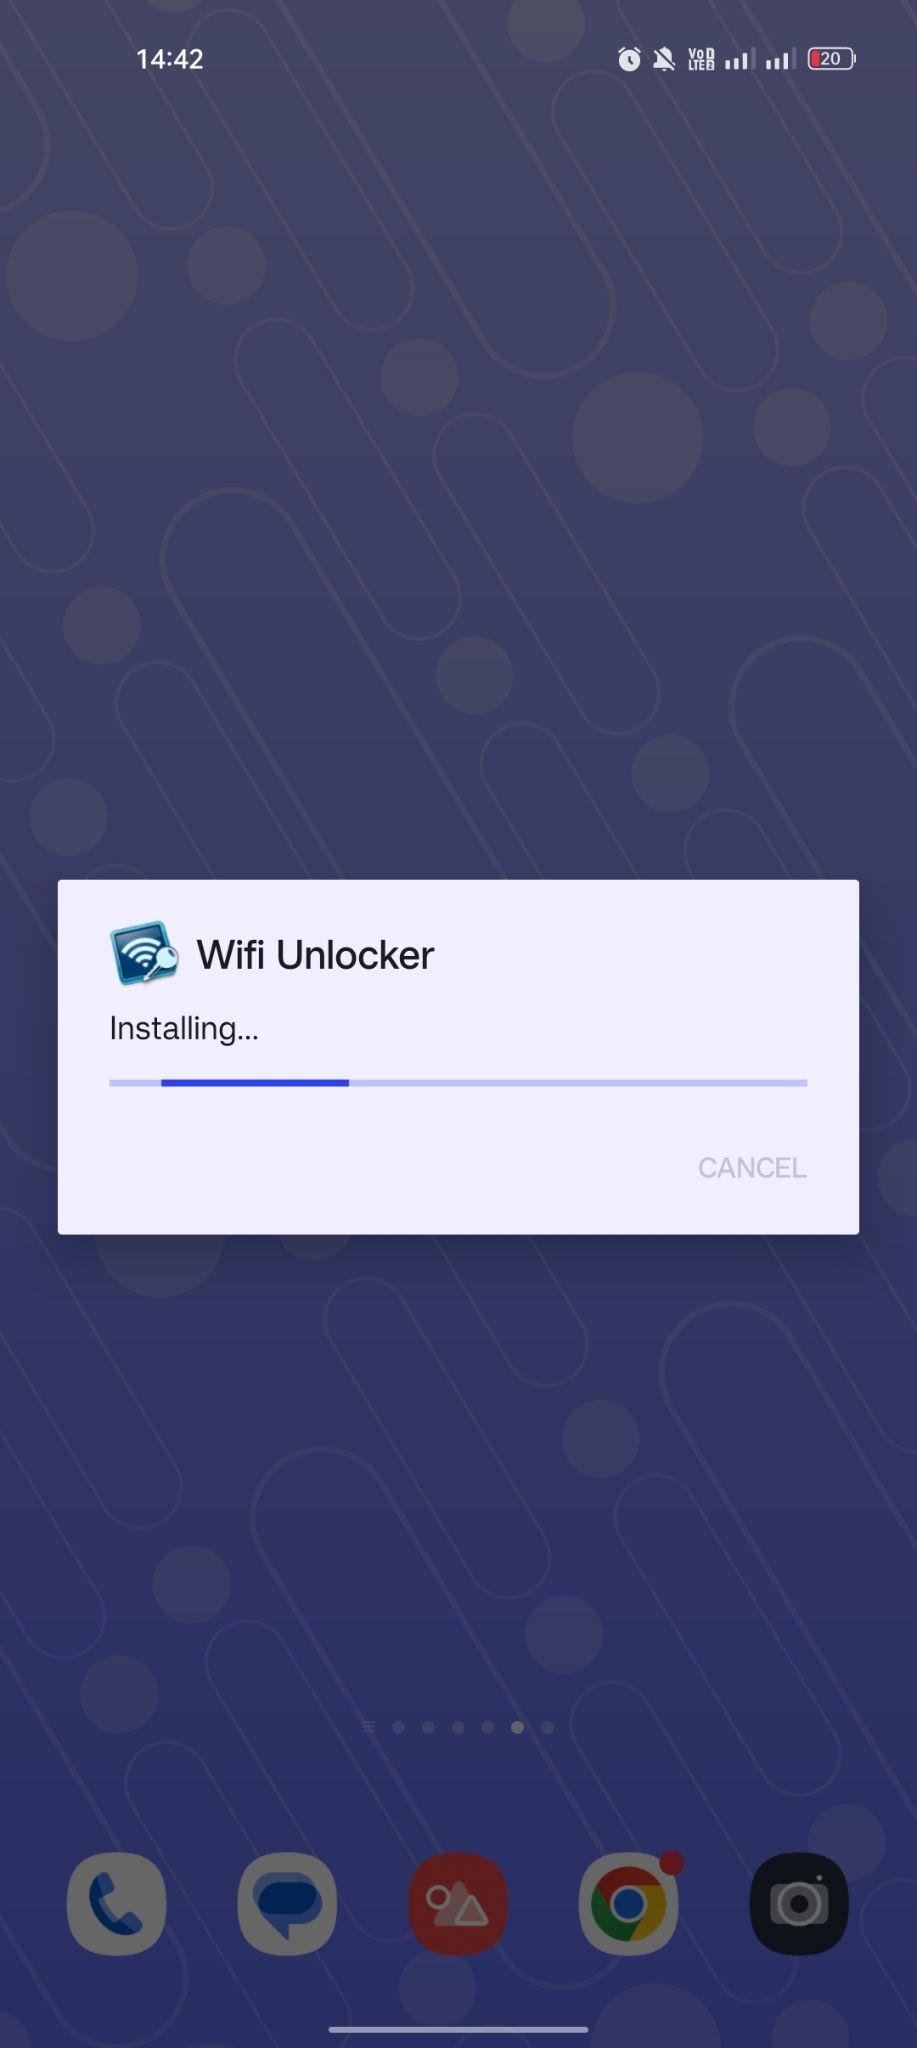 WiFi Unlocker apk installing